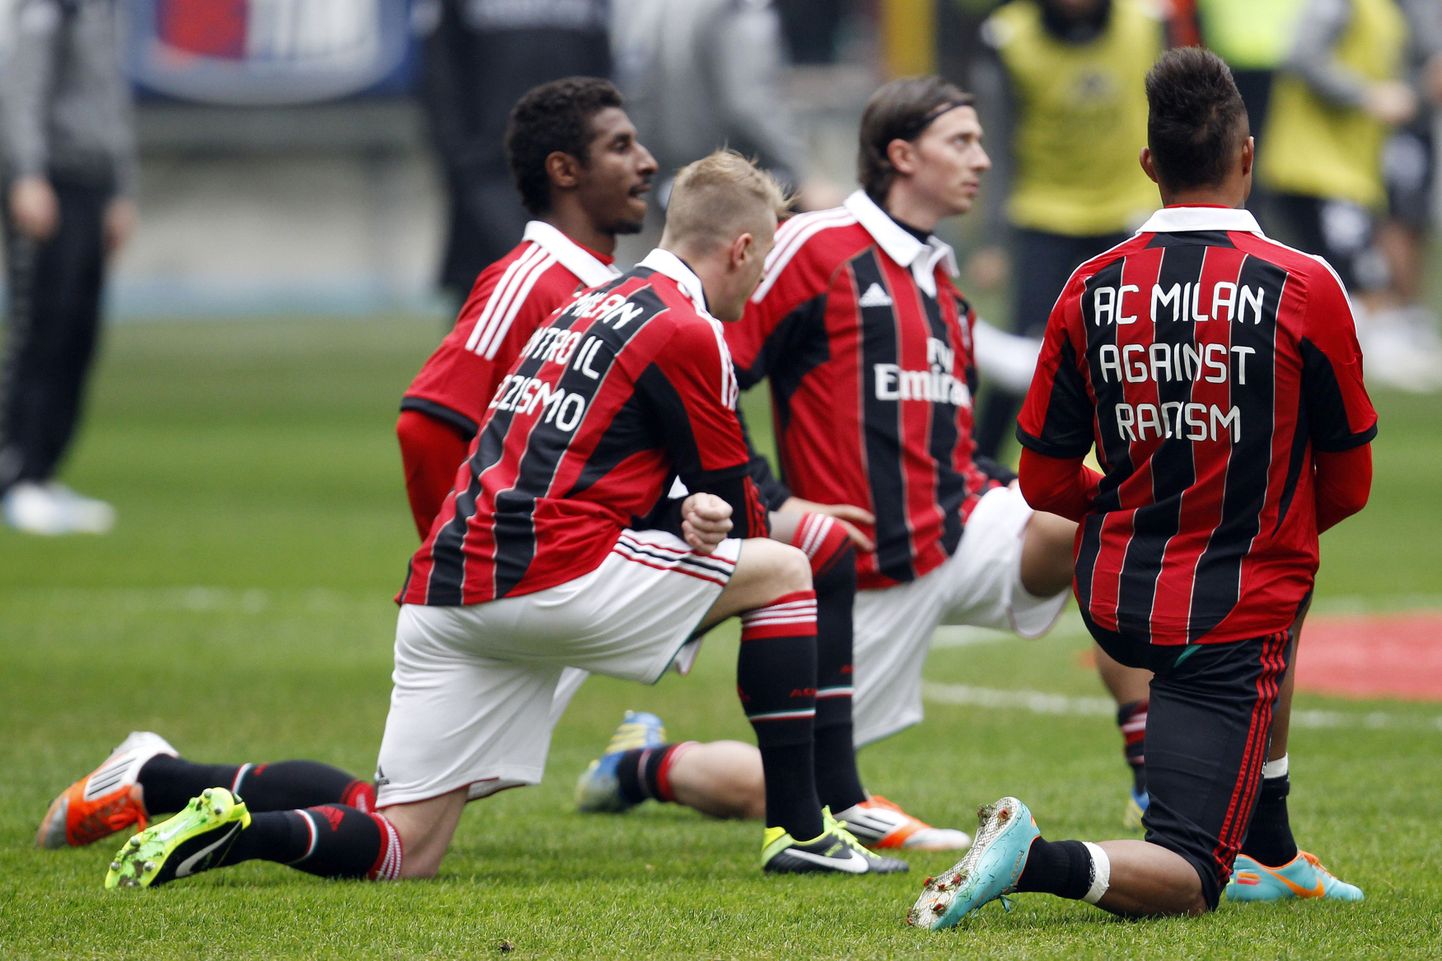 AC Milani mängijad (paremal Kevin-Prince Boateng) kandsid pärast vahejuhtumit rassismi vastase sõnumiga särke.